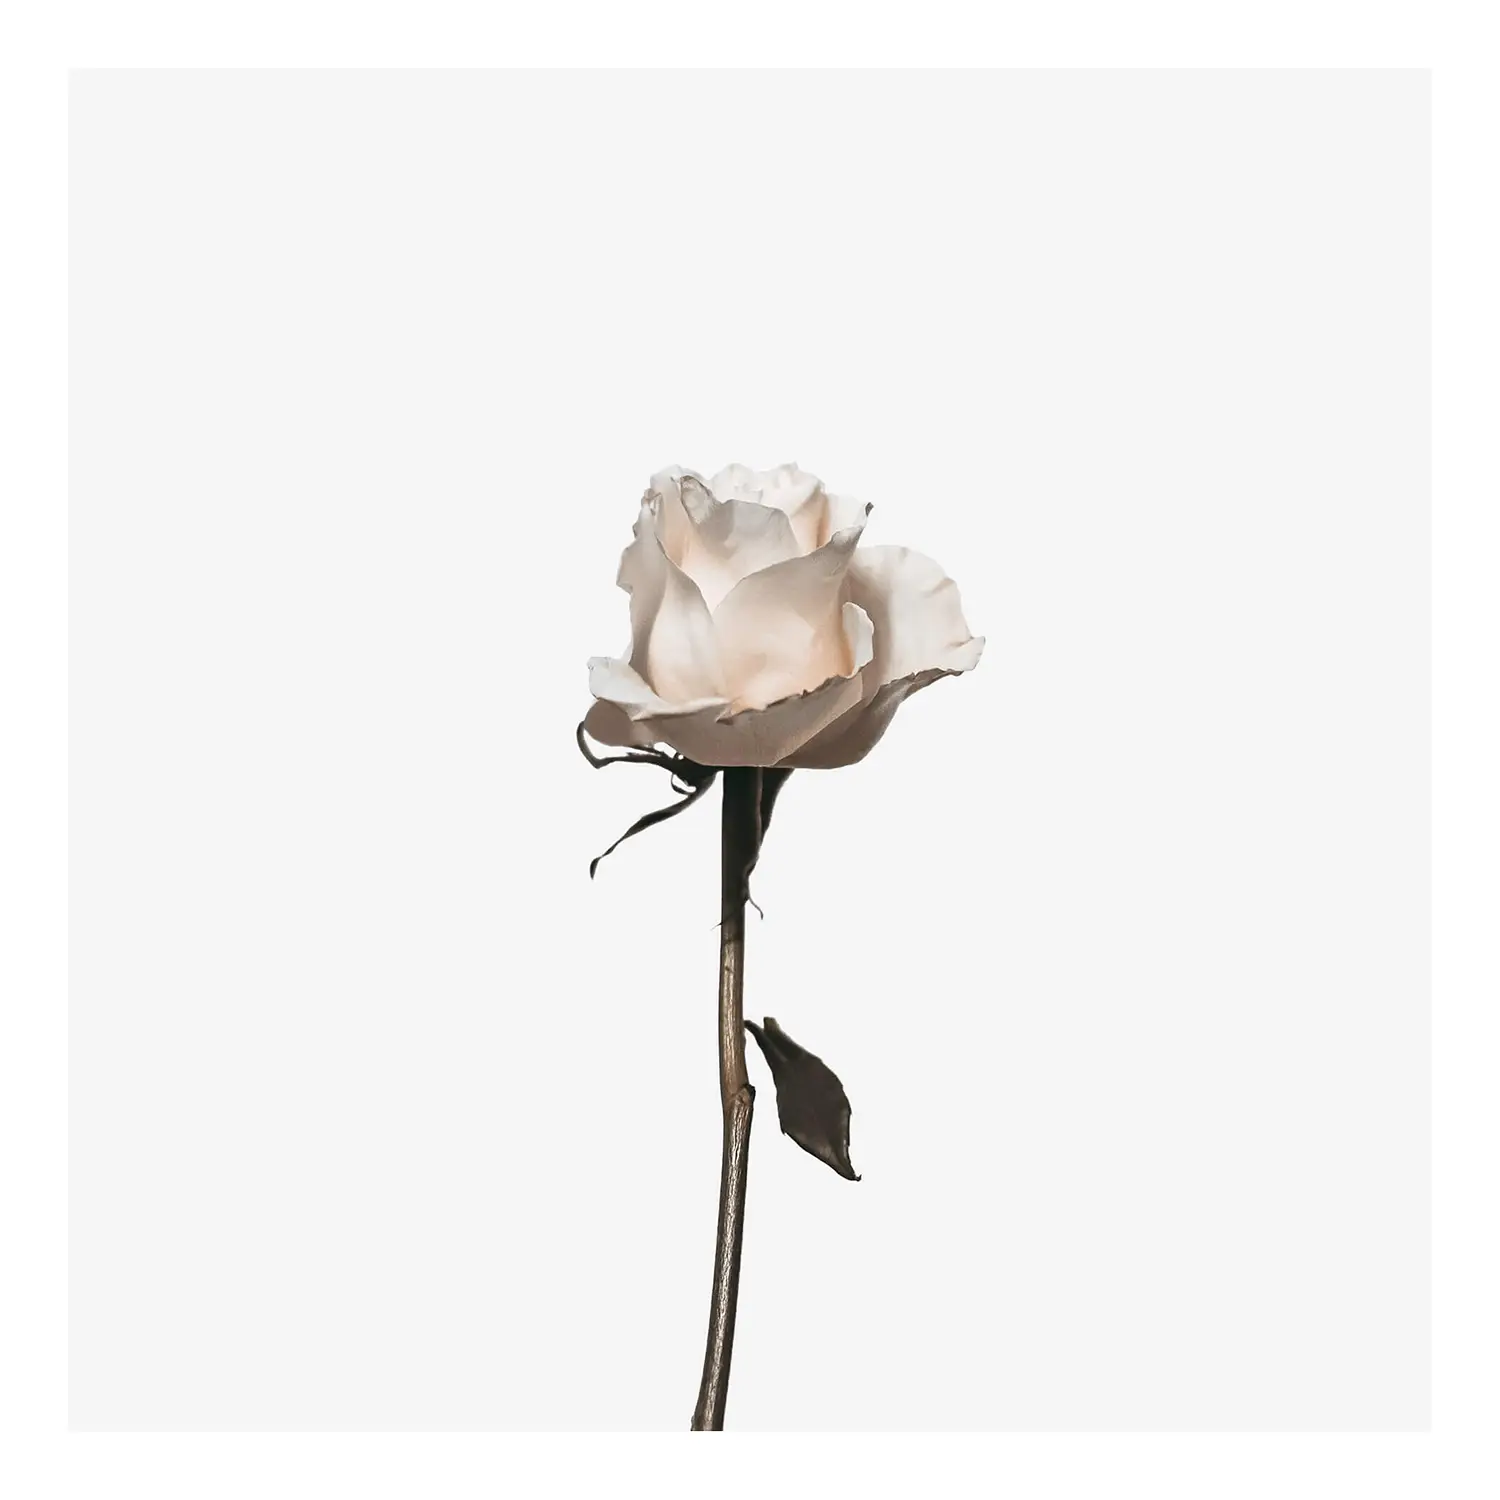 Leinwandbild Rosen The White Rose